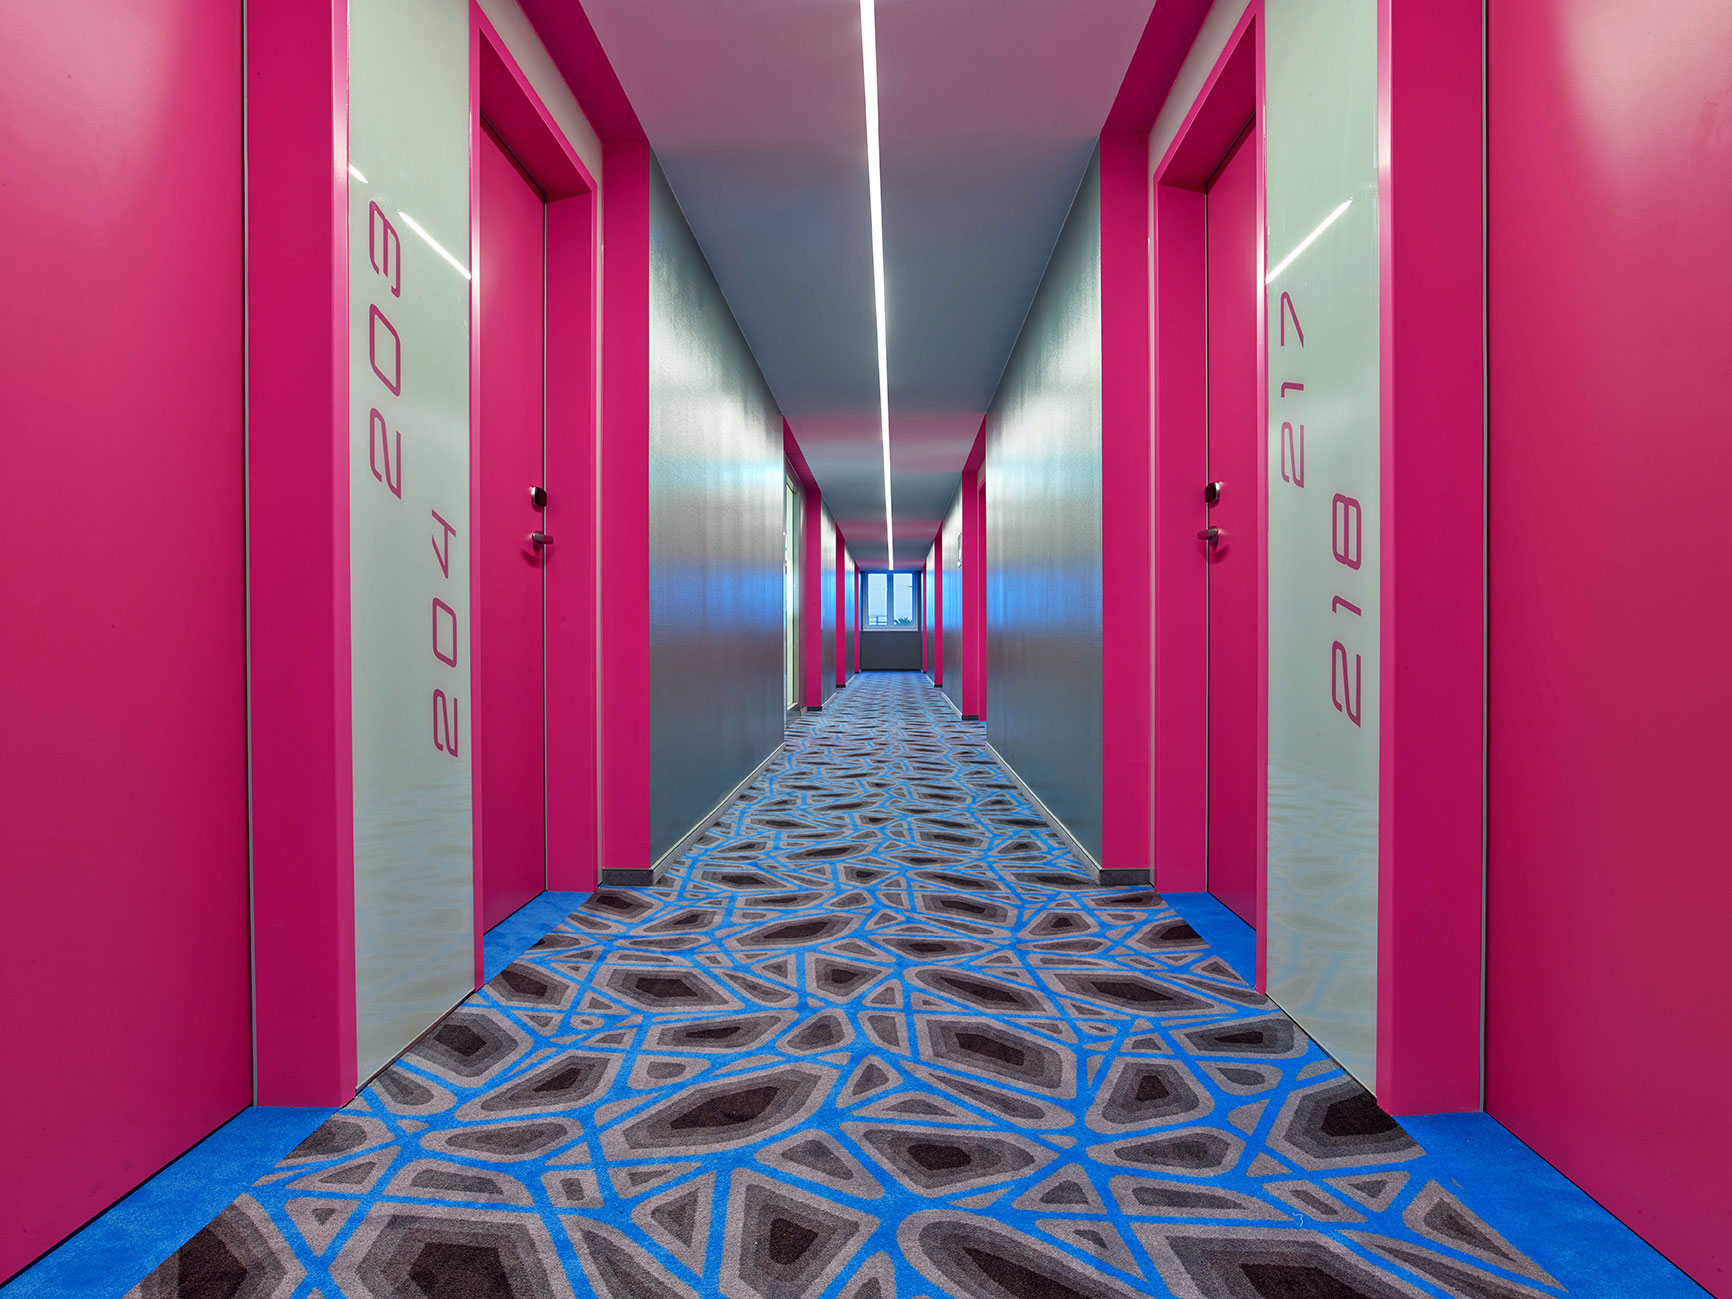 Flur des Hotels mit pinken Wänden und Türen, sowie einem blau gemustertem Boden